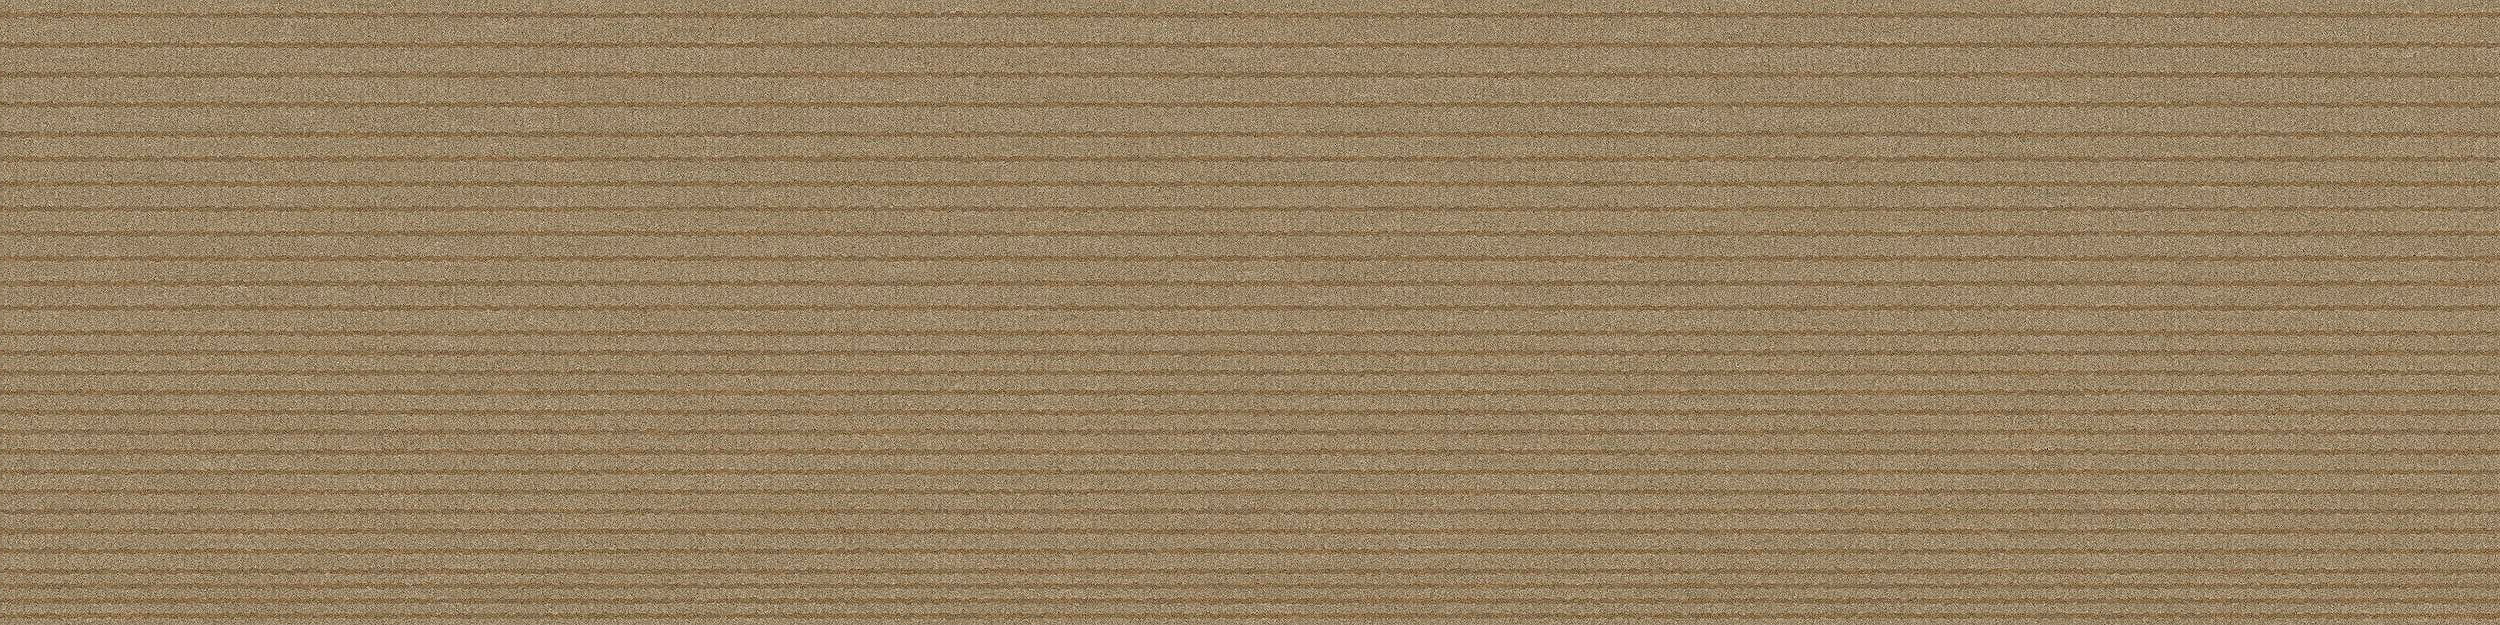 B703 Carpet Tile In Sand numéro d’image 8